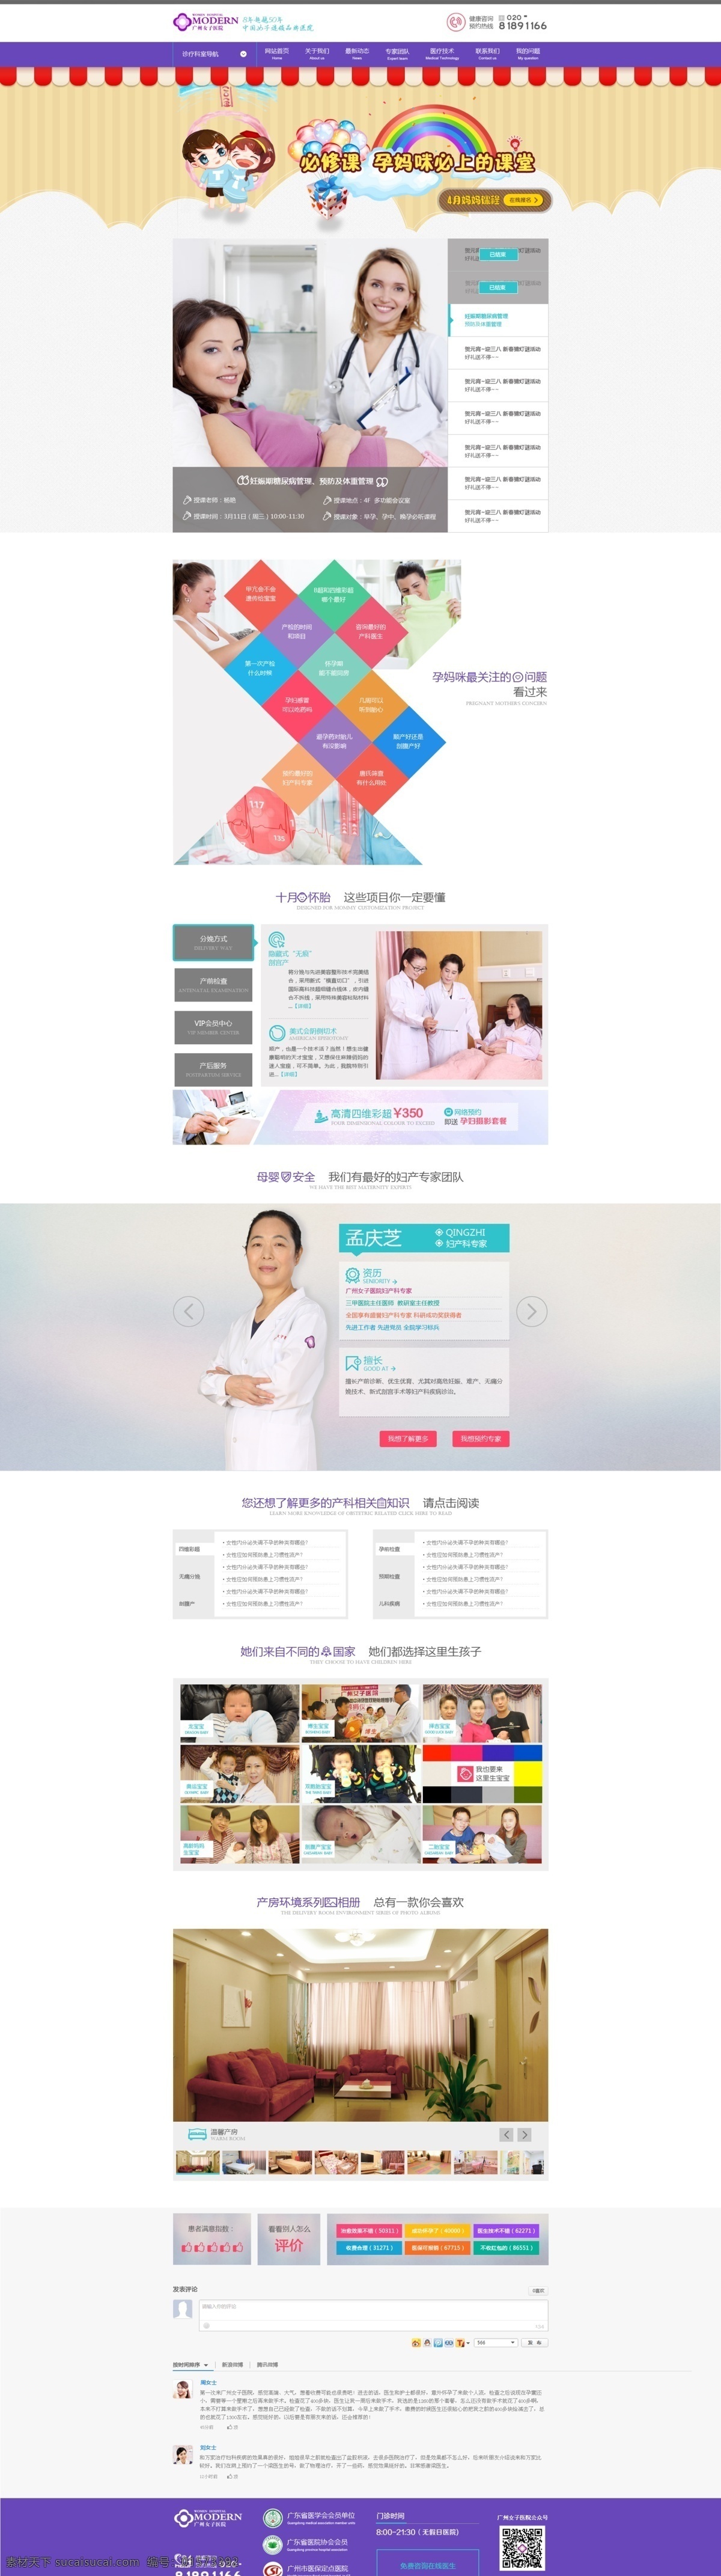 惠州 网 二级域名 产科 频道 页 模板 惠州网 白色